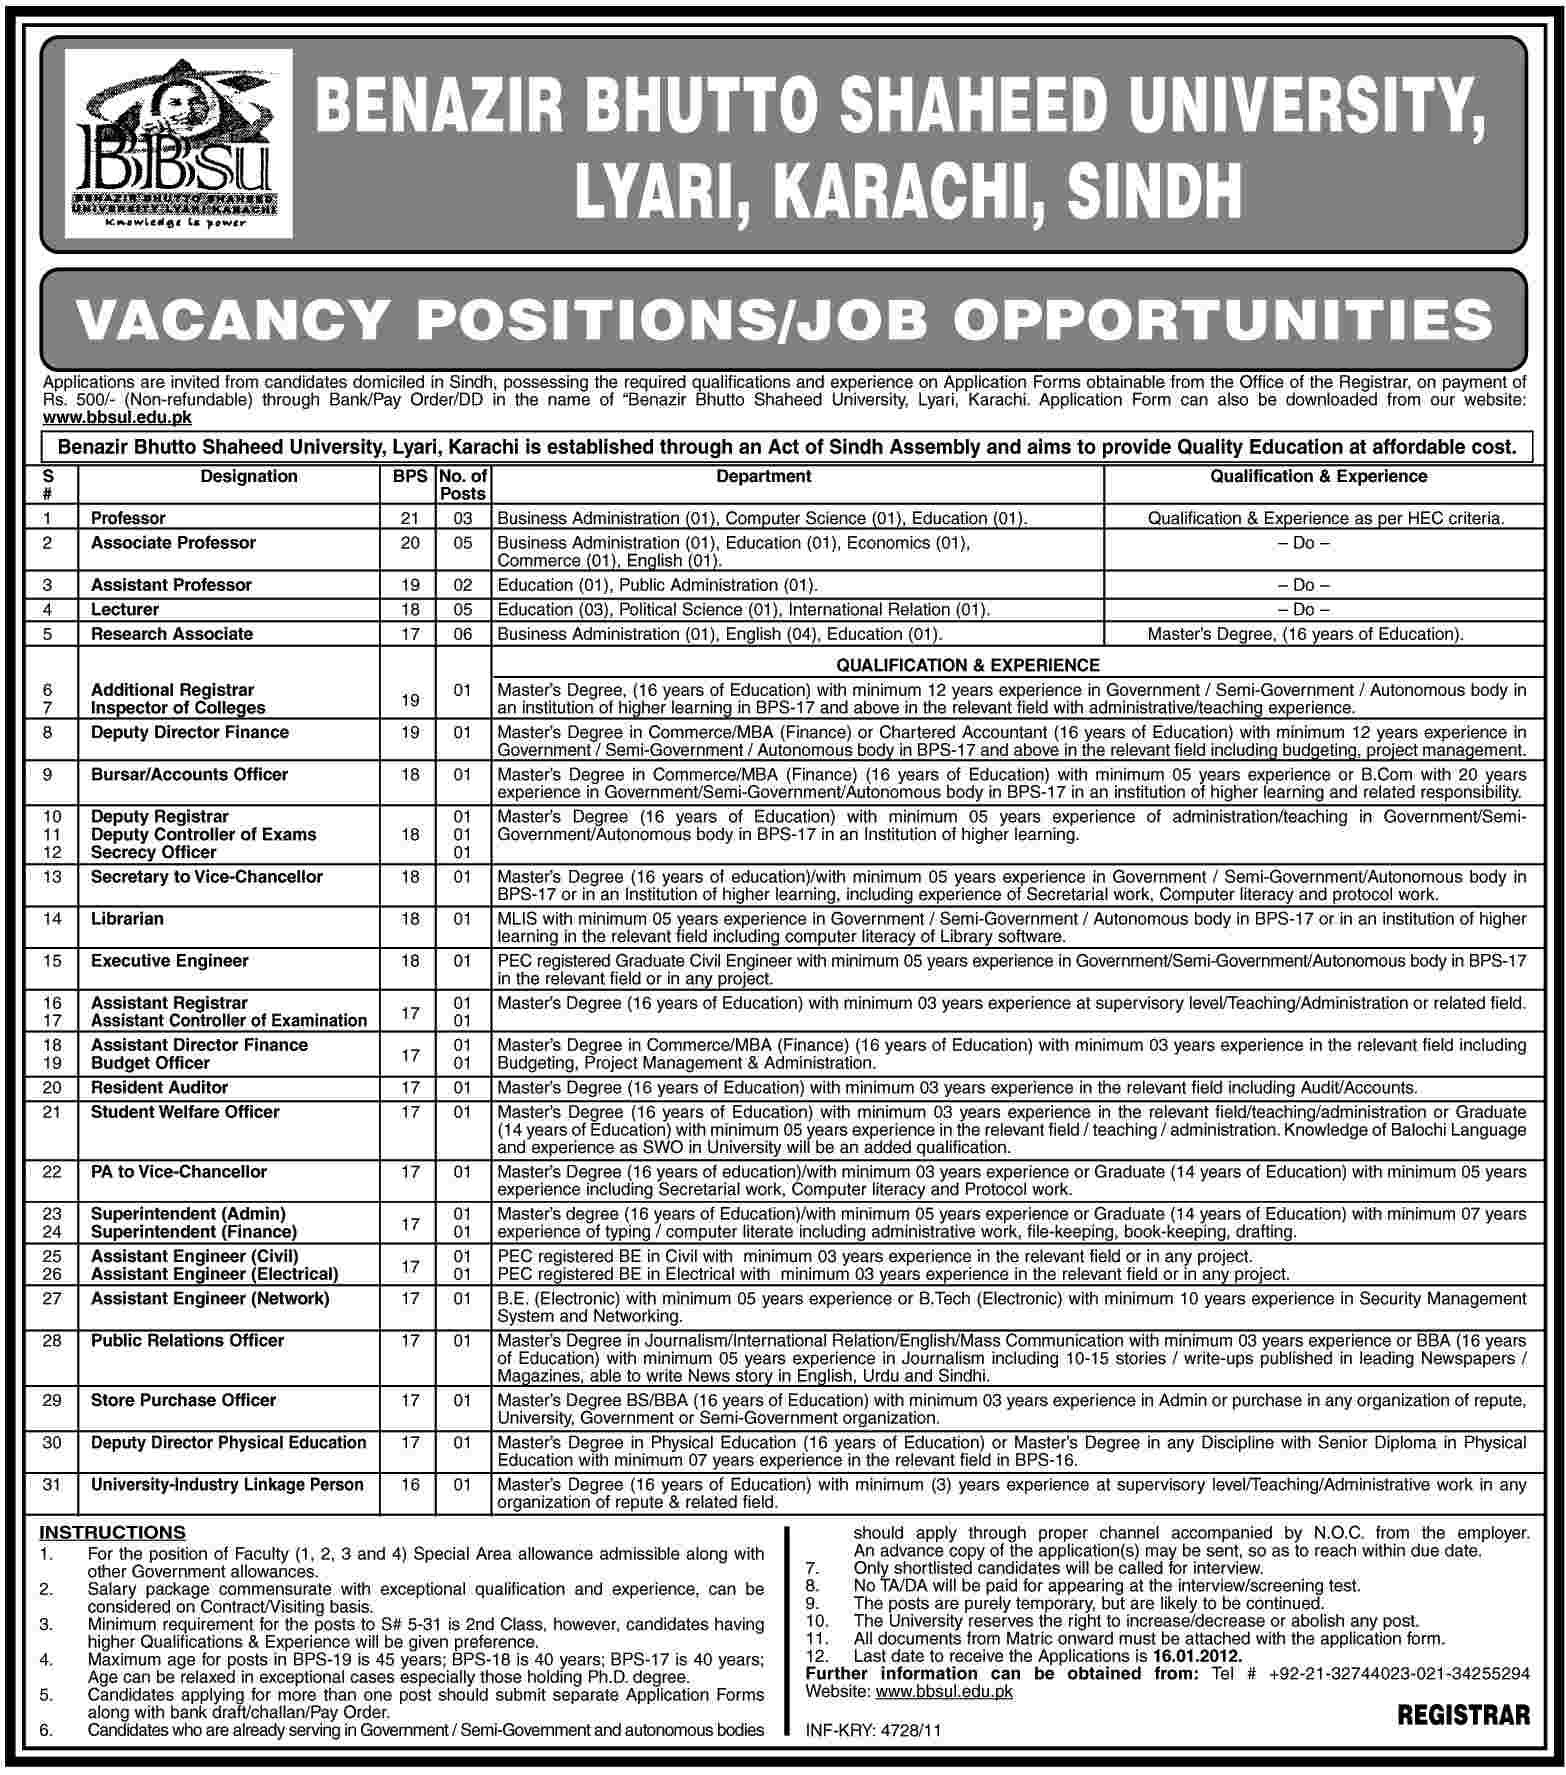 Benazir Bhutto Shaheed University, Lyari, Karachi Jobs Opportunities